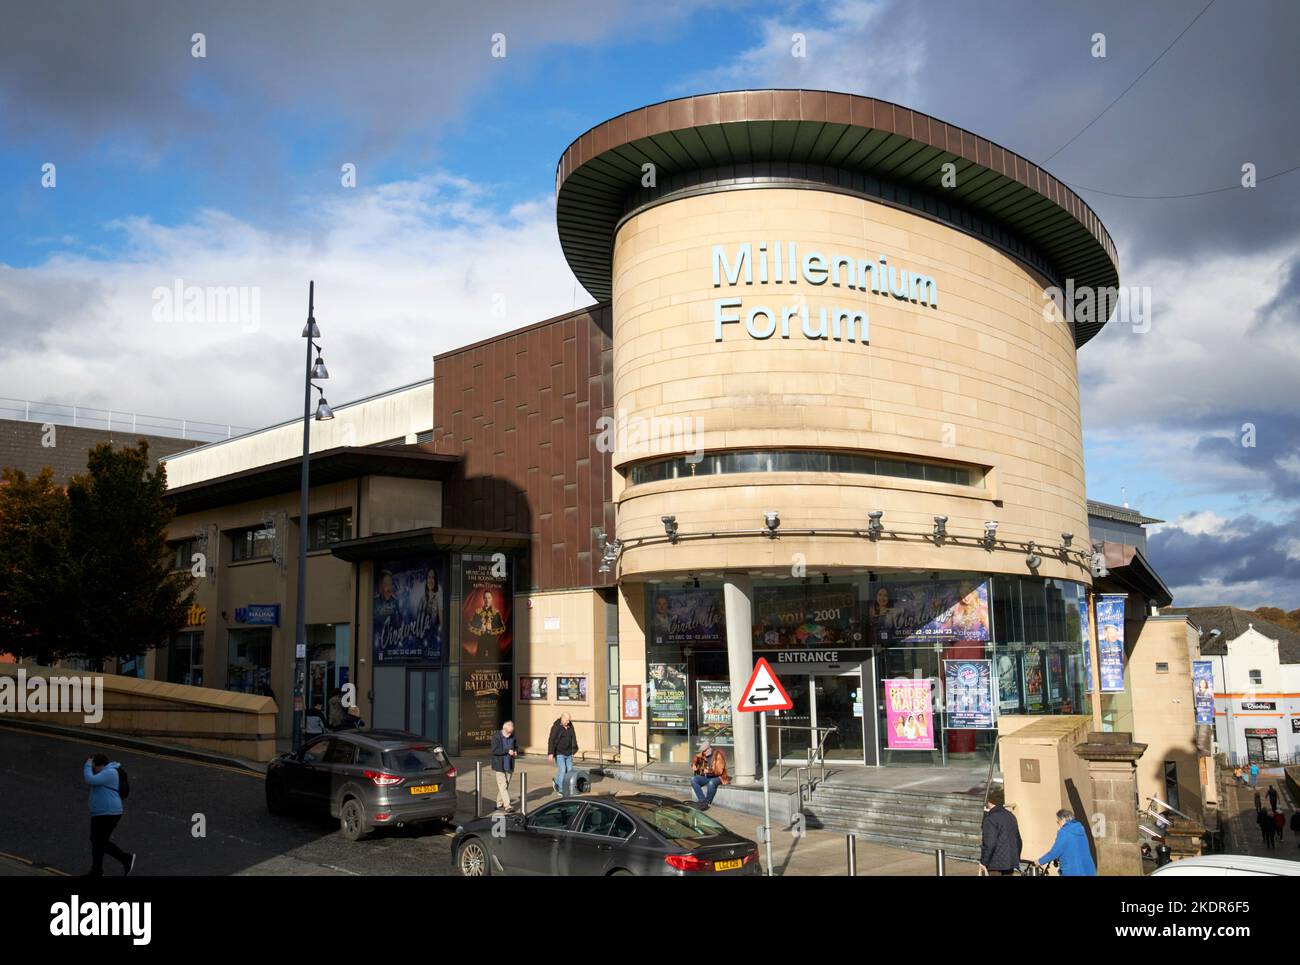 Das Millennium Forum Theater- und Konferenzzentrum derry londonderry Northern ireland uk Stockfoto